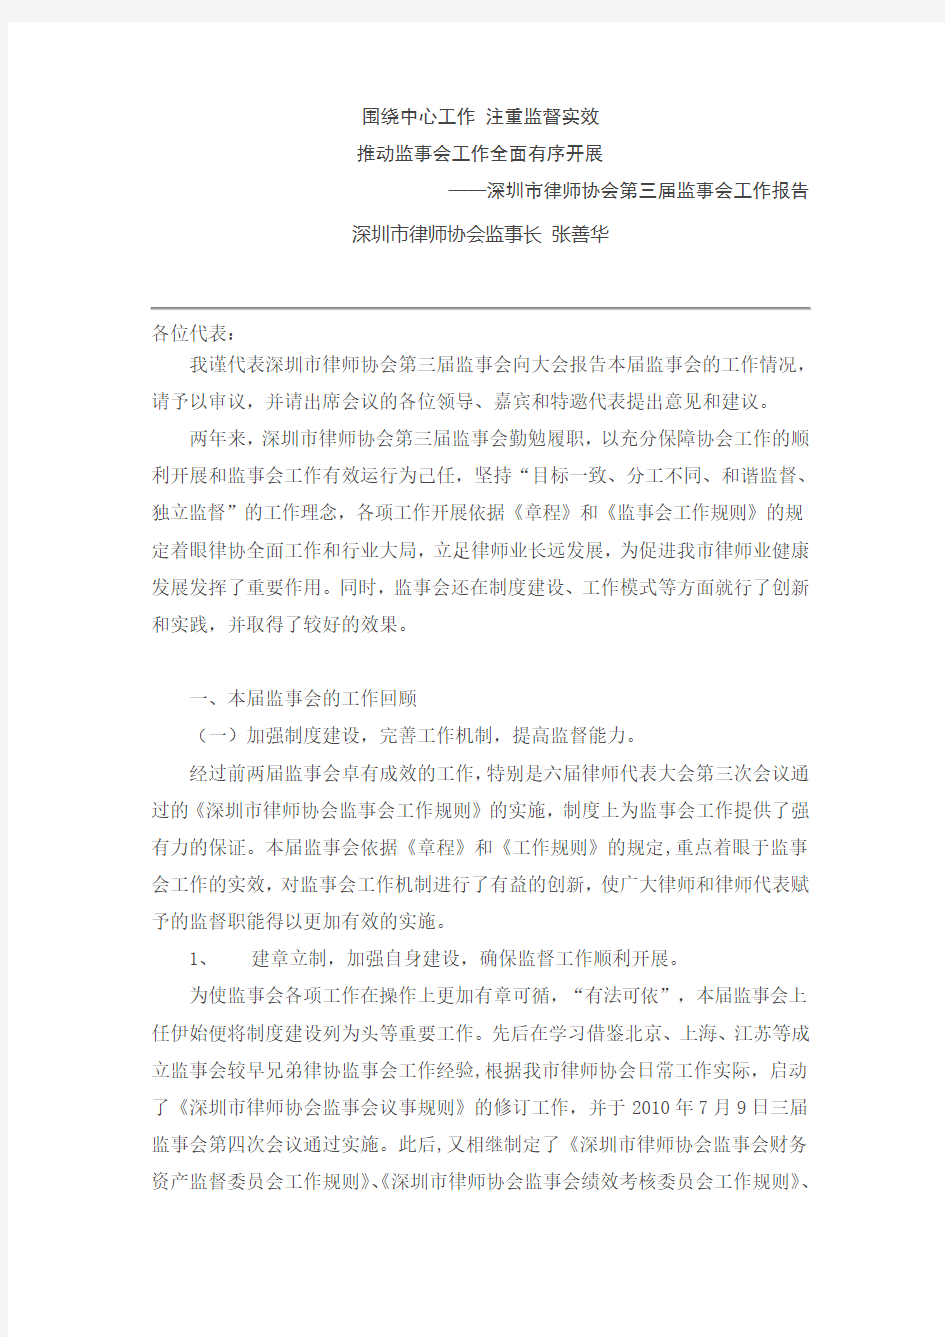 深圳市律师协会第三届监事会工作报告